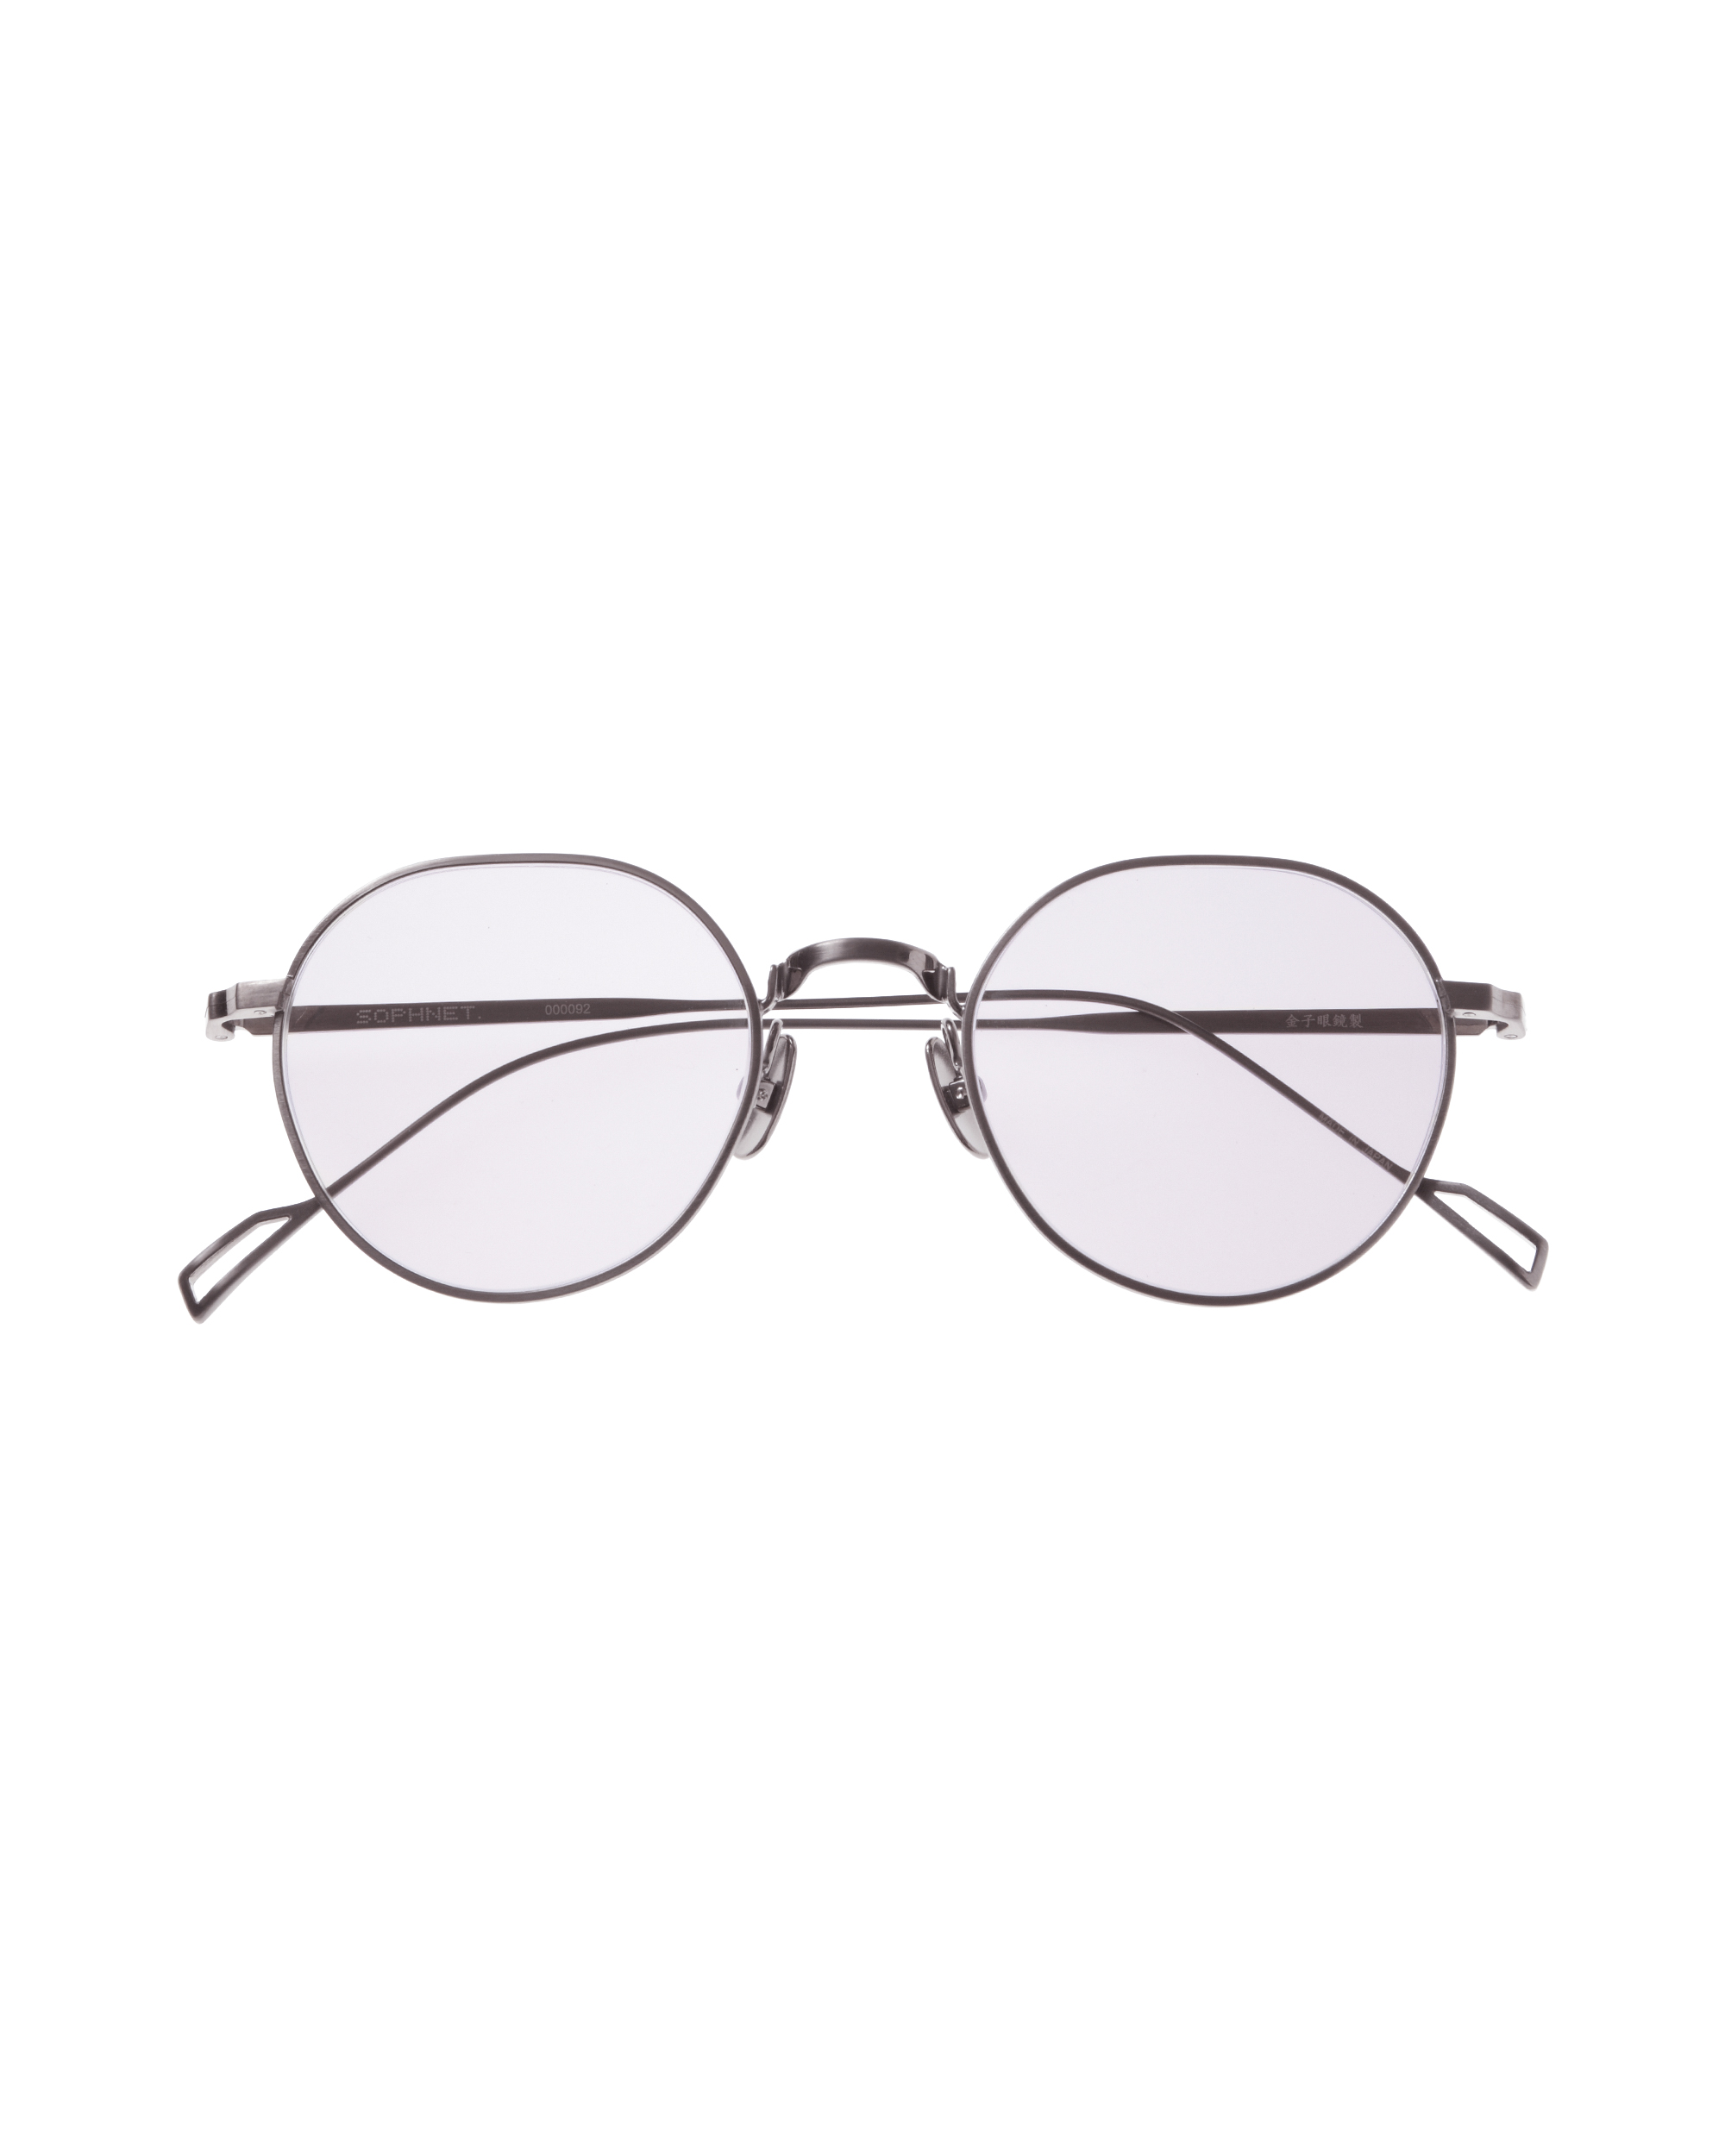 ソフネット」と「金子眼鏡」がコラボしたサングラス発売 - TOKION